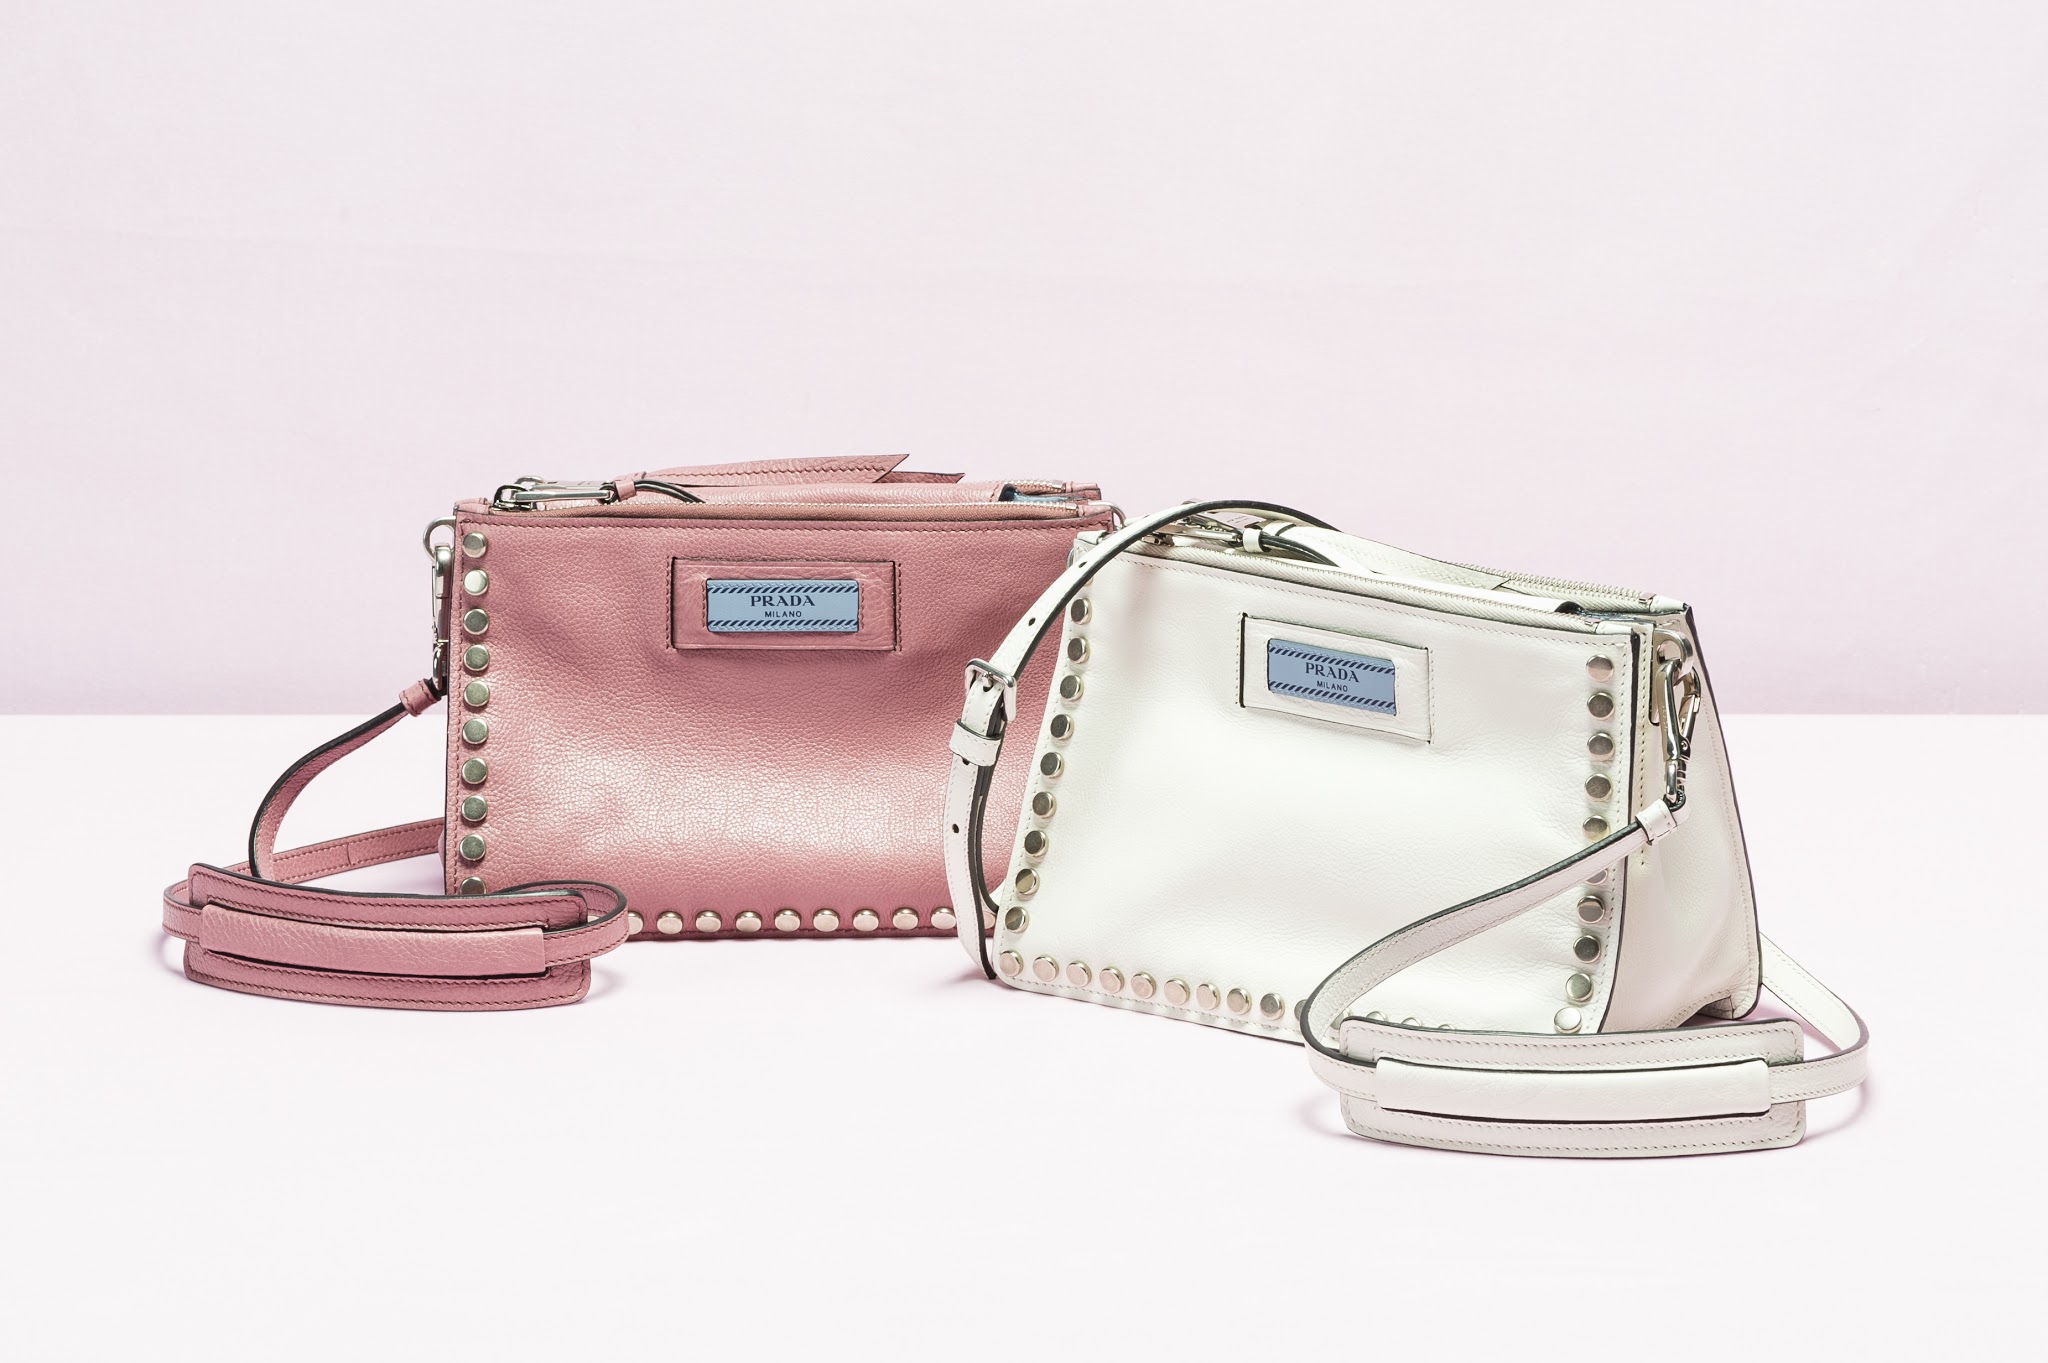 Prada's Etiquette Bags - BagAddicts 